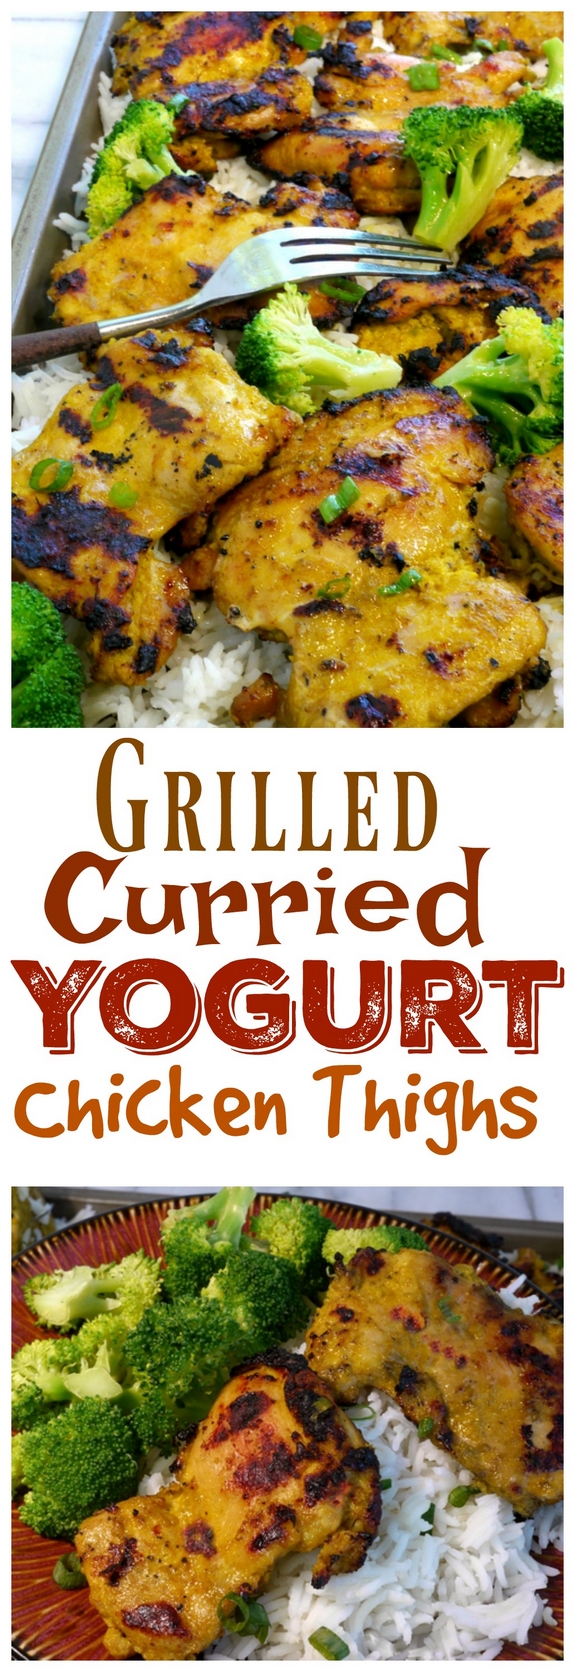 Grilled Curried Yogurt Chicken Thighs 